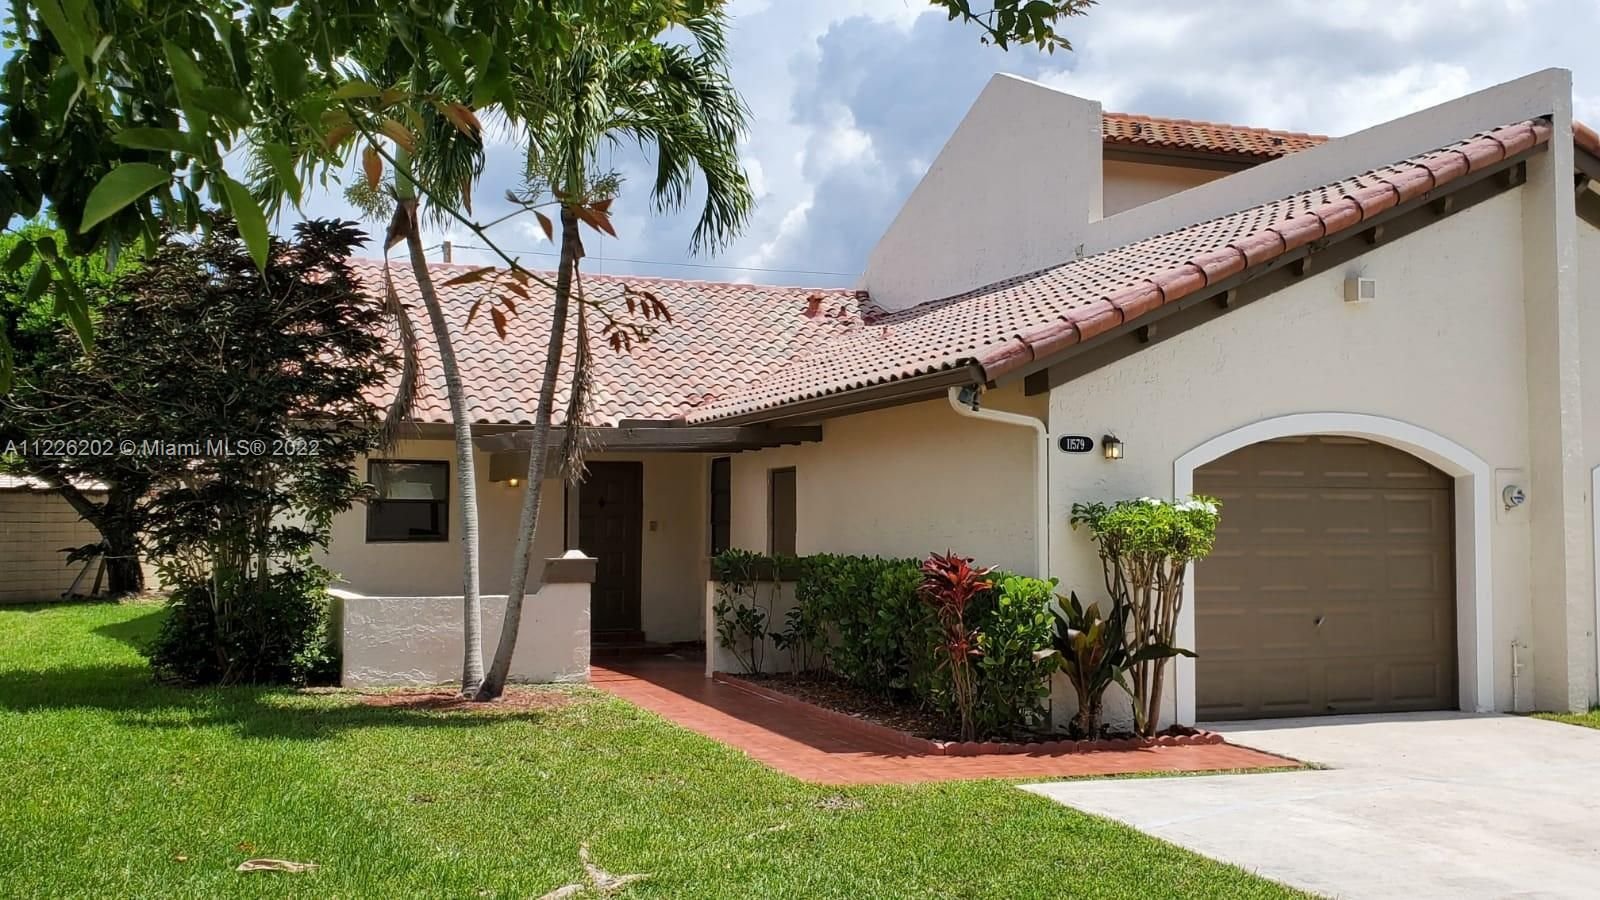 Real estate property located at 11579 84th Ln #11579, Miami-Dade County, Miami, FL